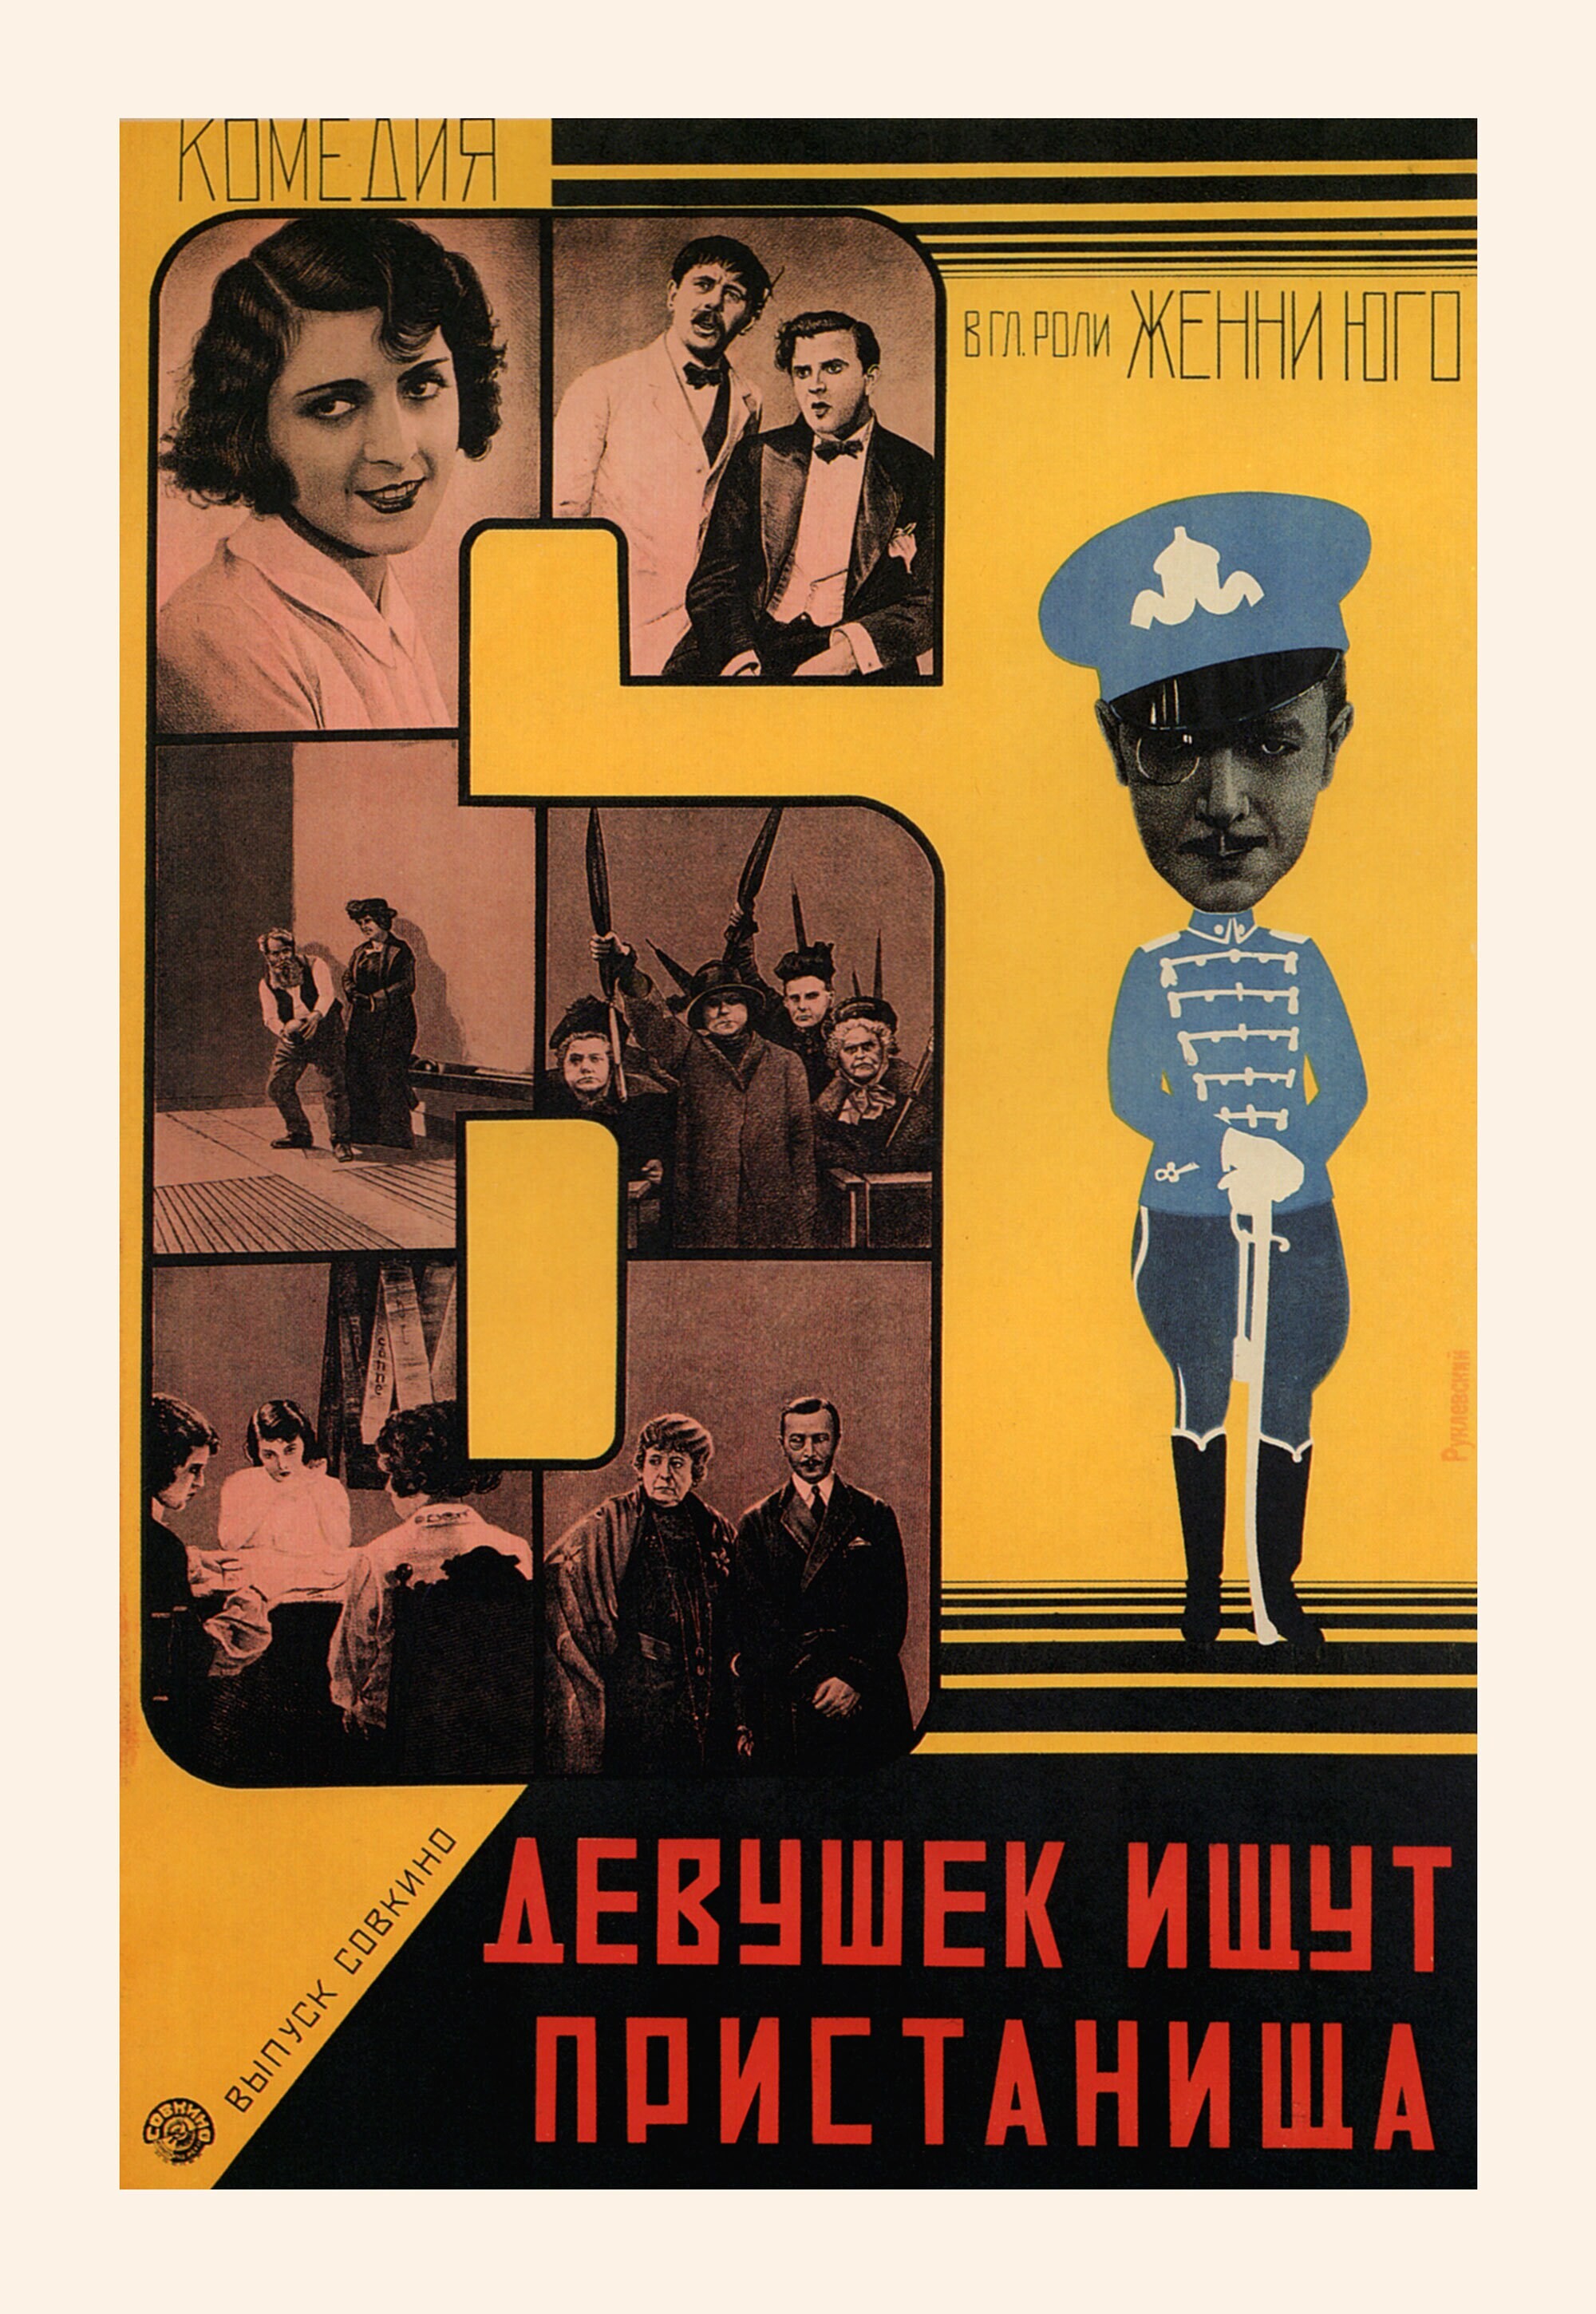 Шесть девушек ищут пристанища, 1928 год, режиссёр Ганс Берендт, плакат к фильму, авторы Георгий и Владимир Стенберги (авангардное советское искусство, 1920-е)